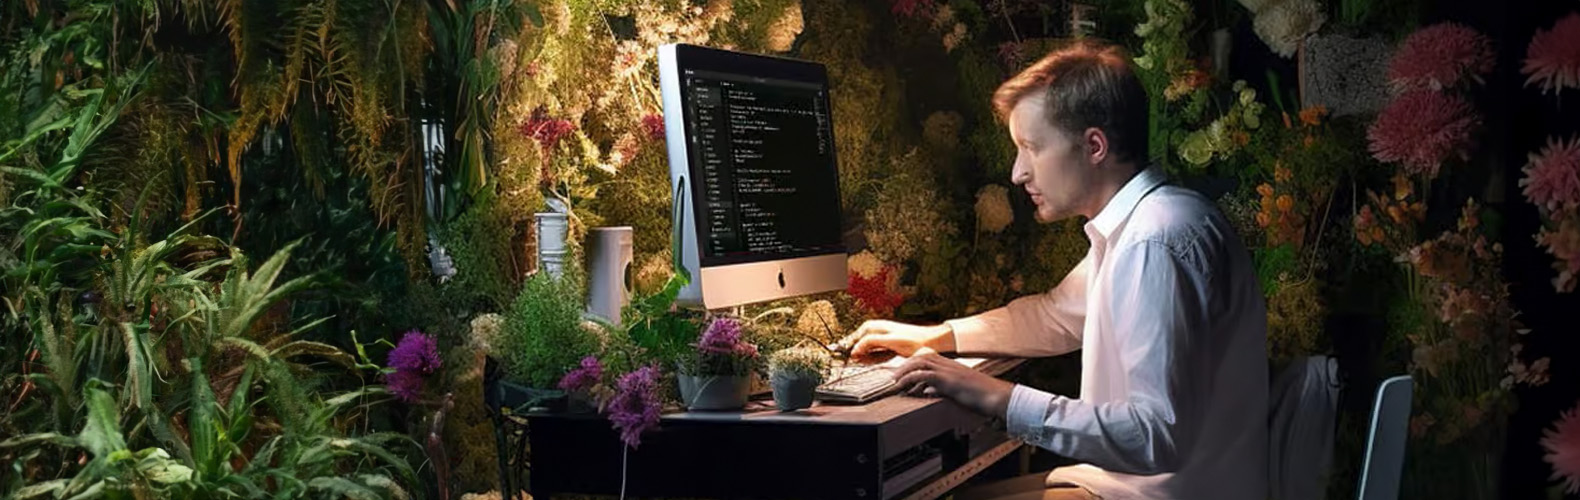 Entwickler sitzt vor einem Computer umgeben von Pflanzen und Blumen